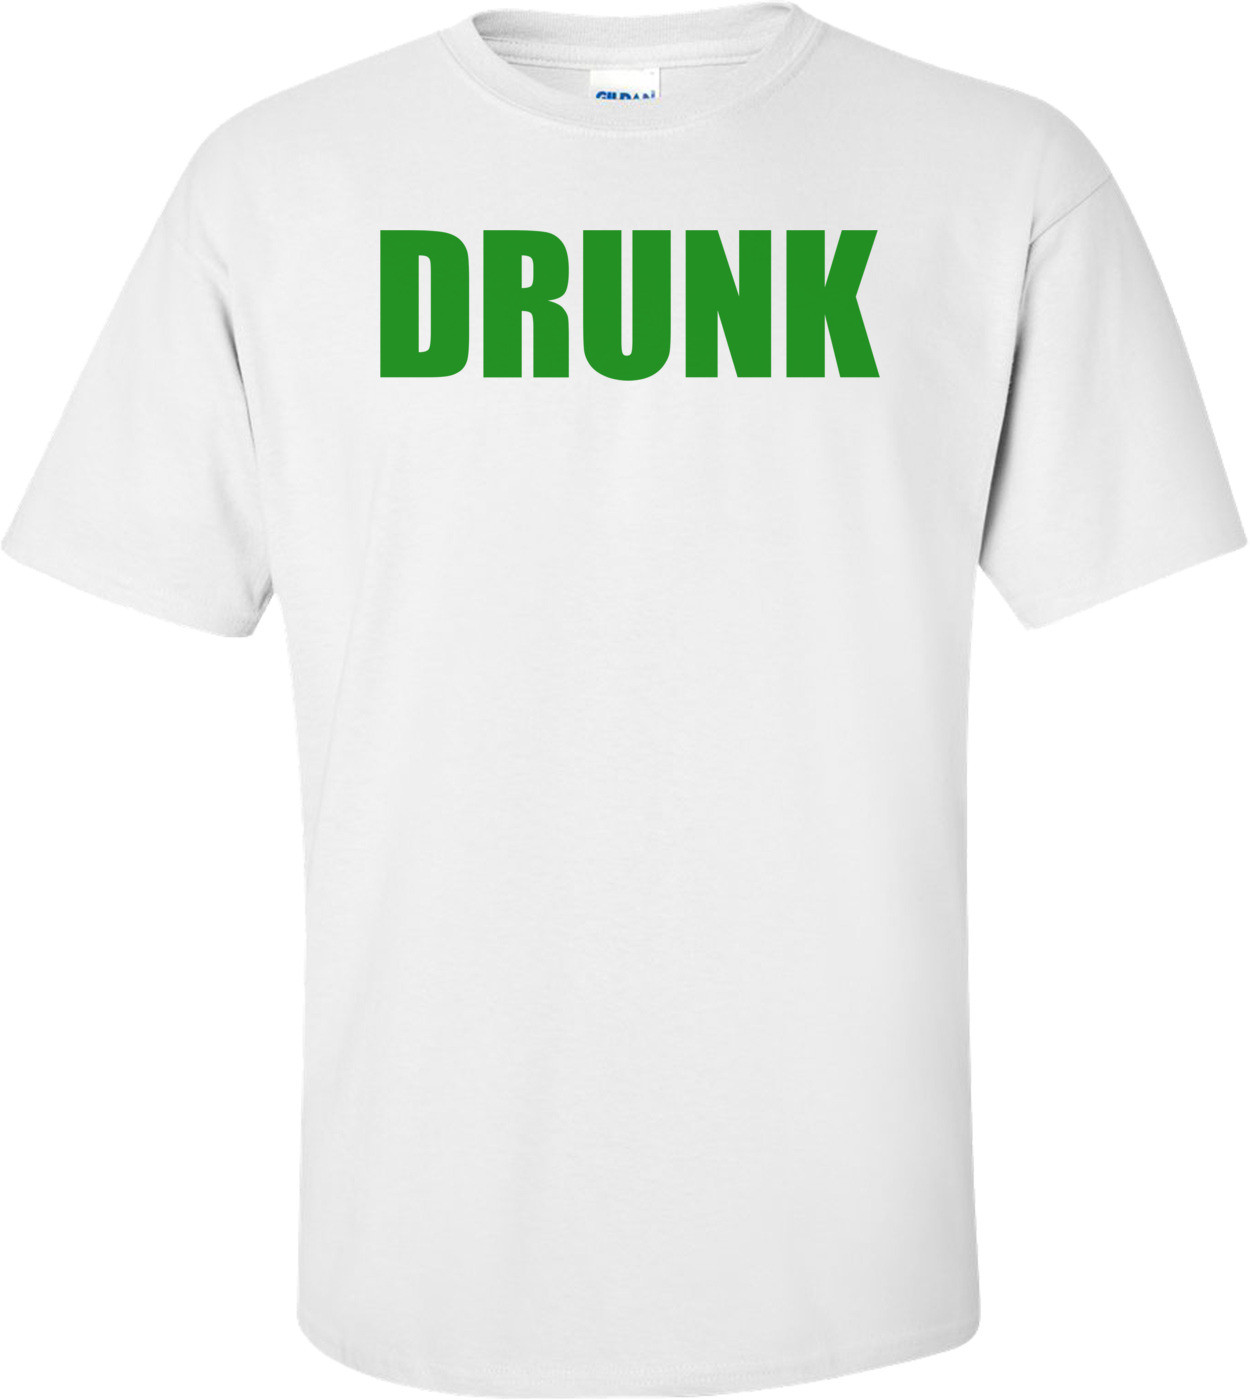 DRUNK Shirt